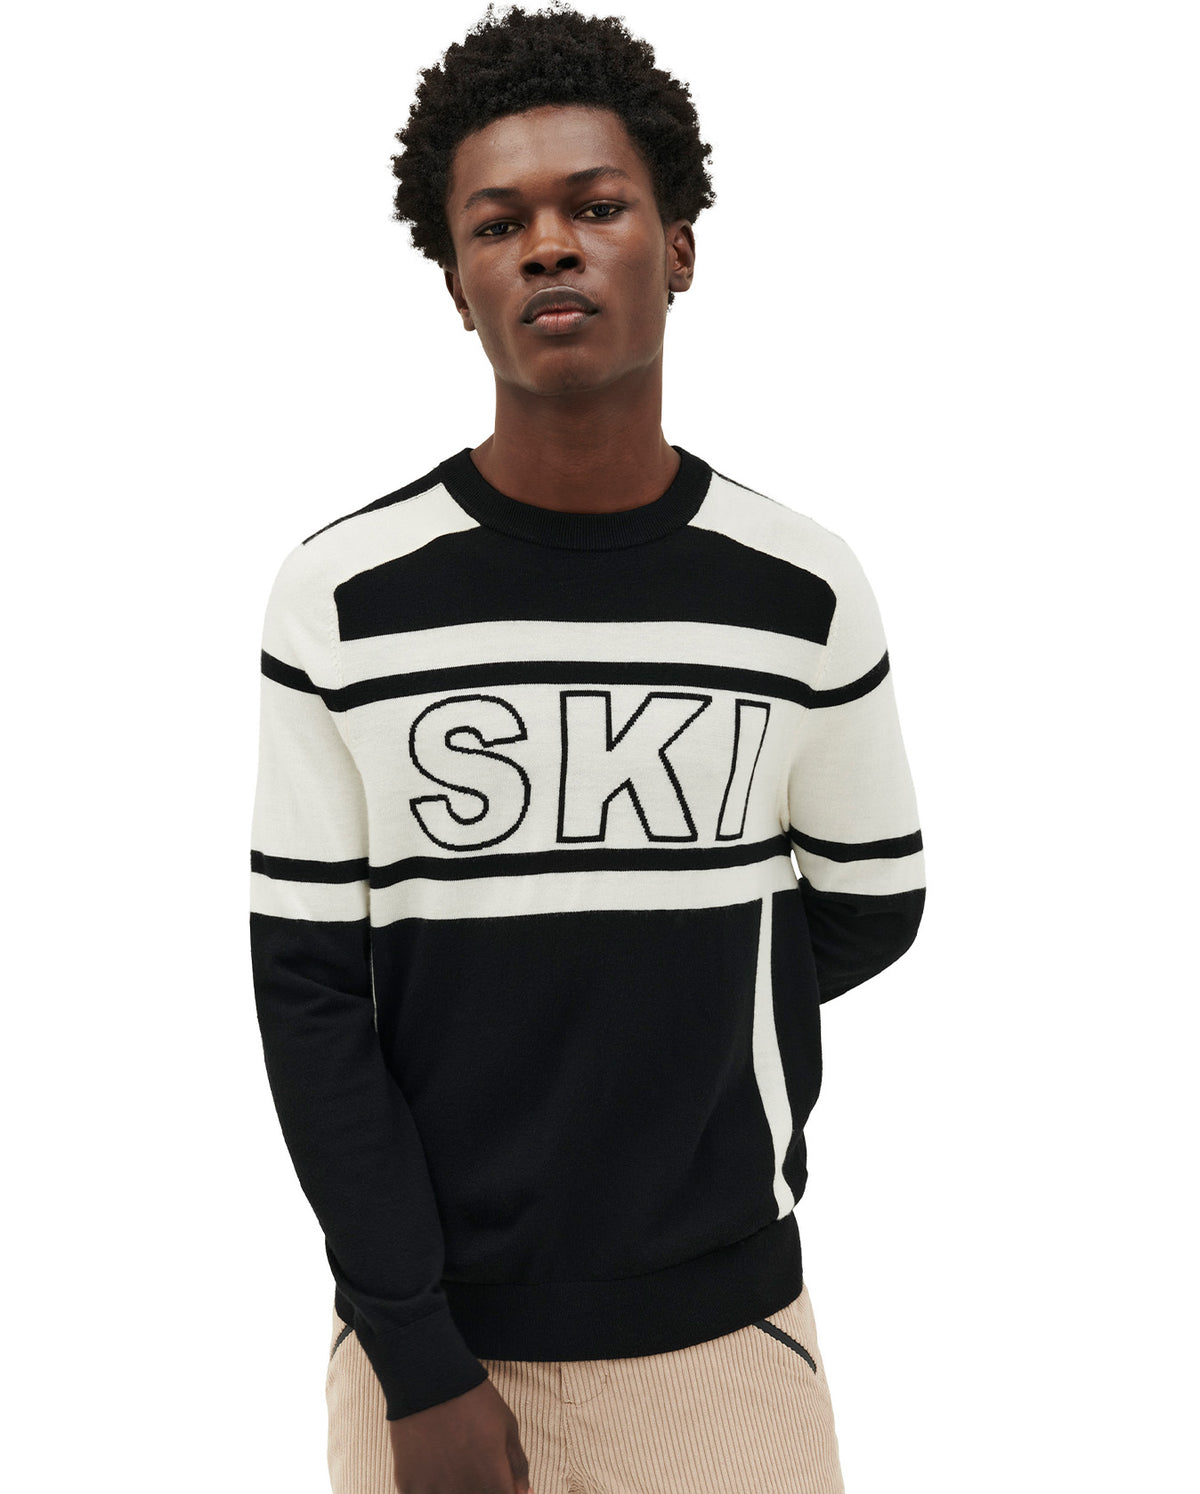 22 Ski Sweater - Black